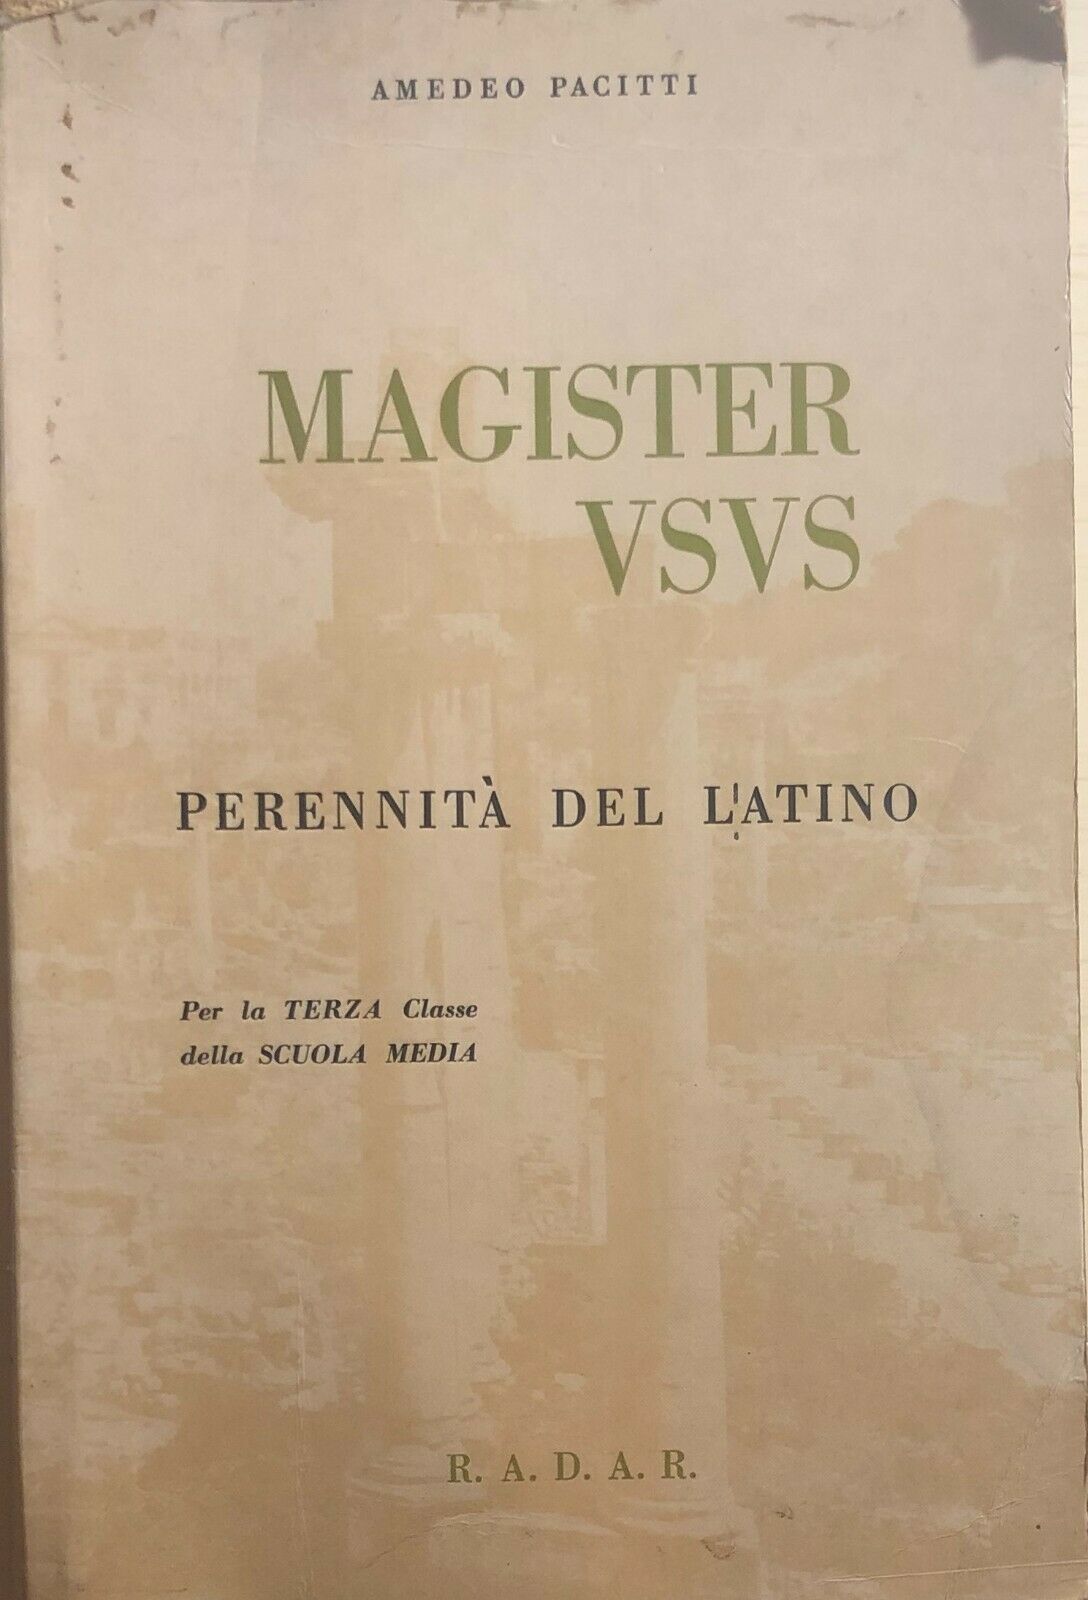 Magister vsvs di Amedeo Pacitti, 1965, Radar